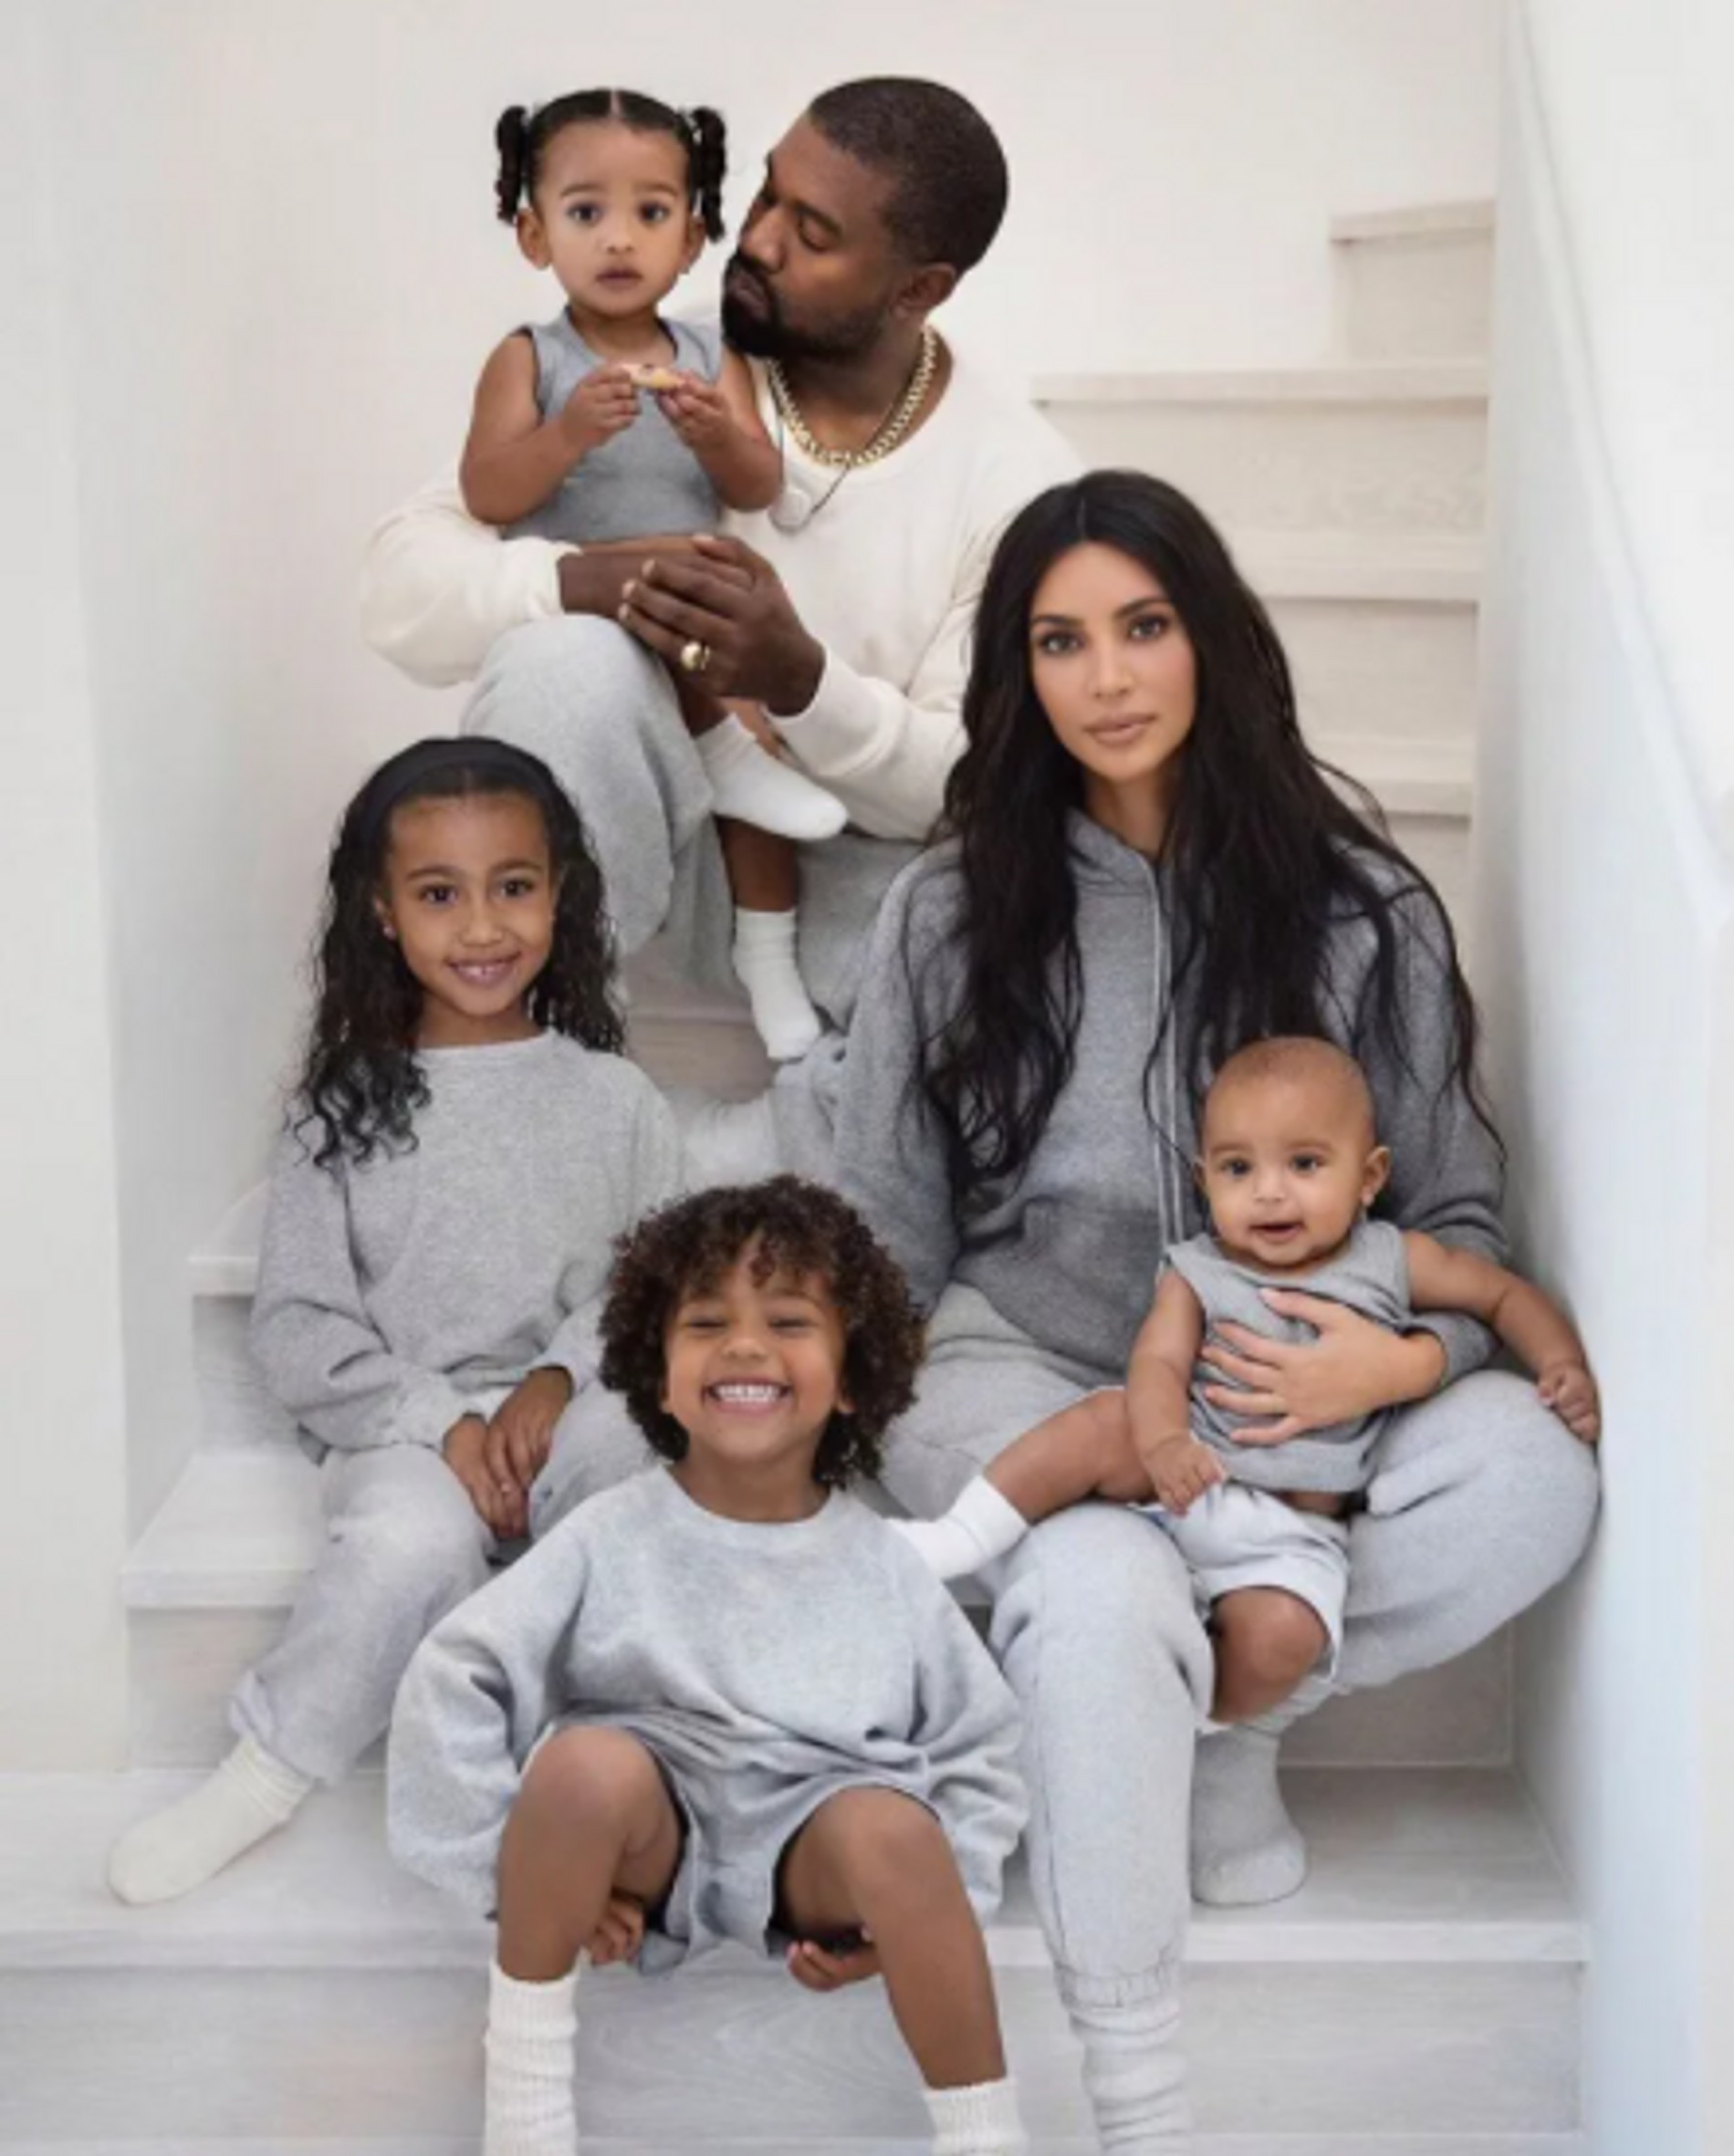 Ким и Канье с детьми
Фото: @kimkardashian